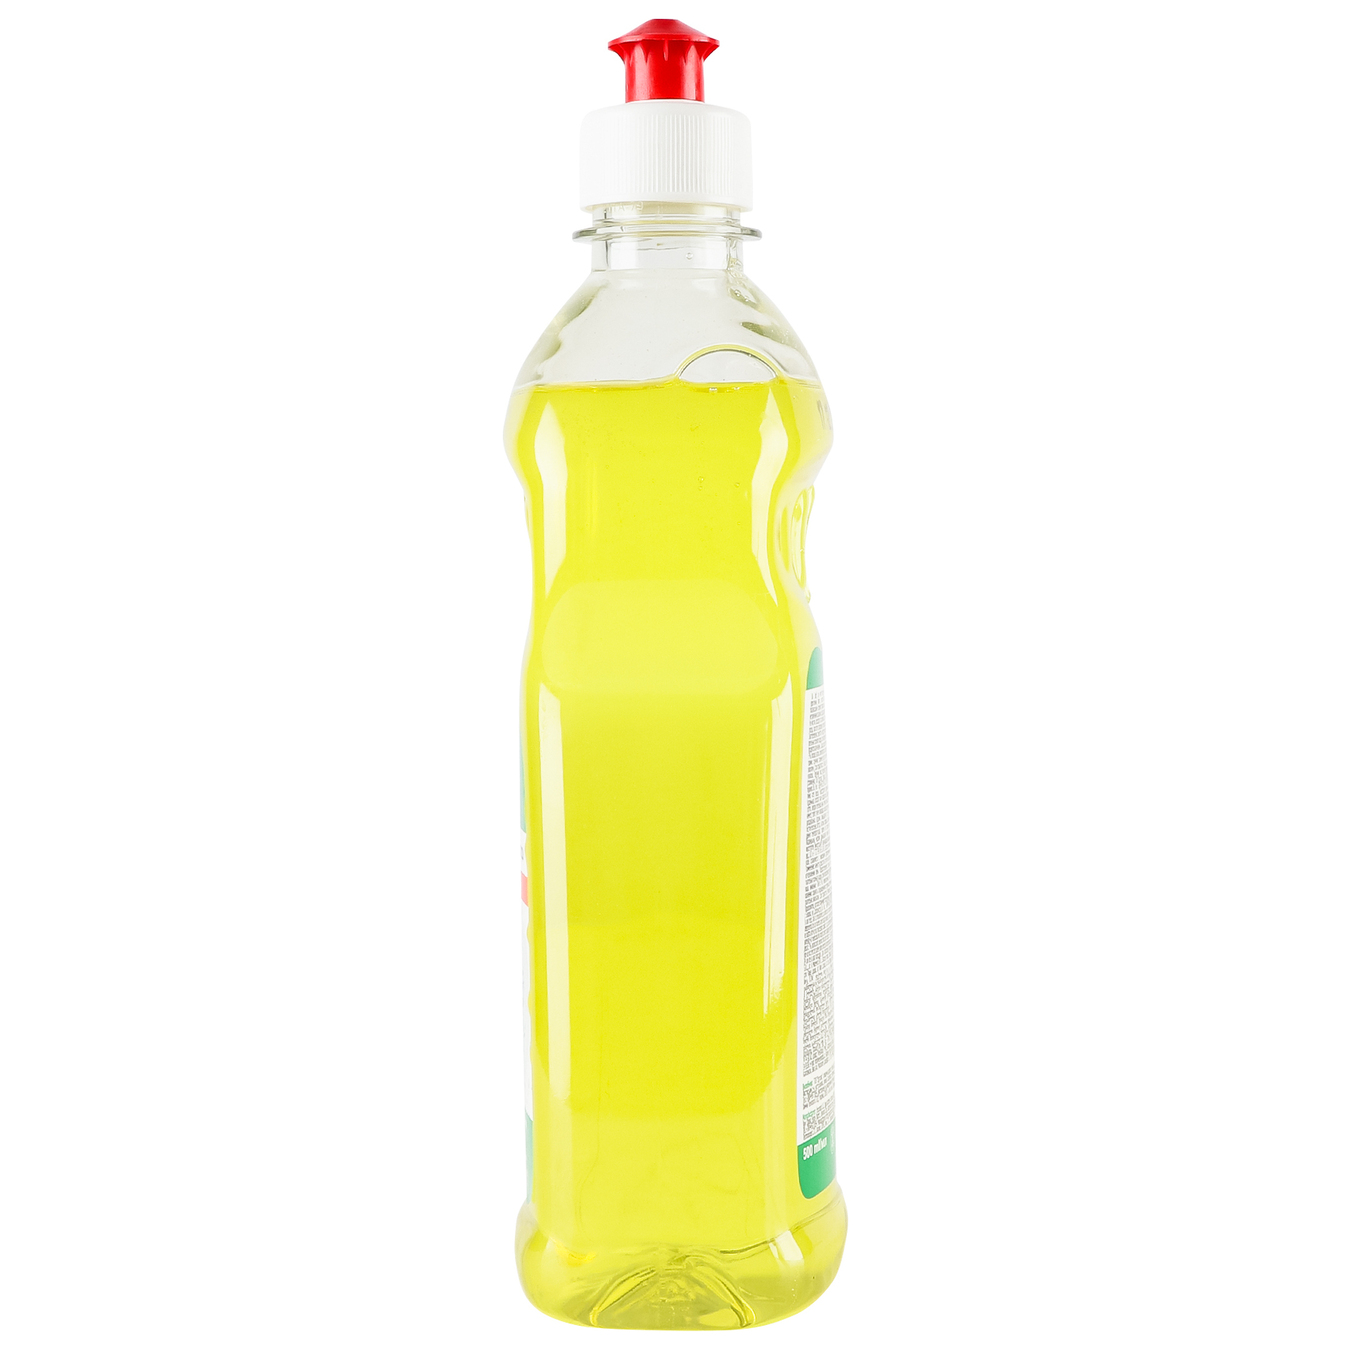 Dishwashing detergent Domi Lemon 500ml 5